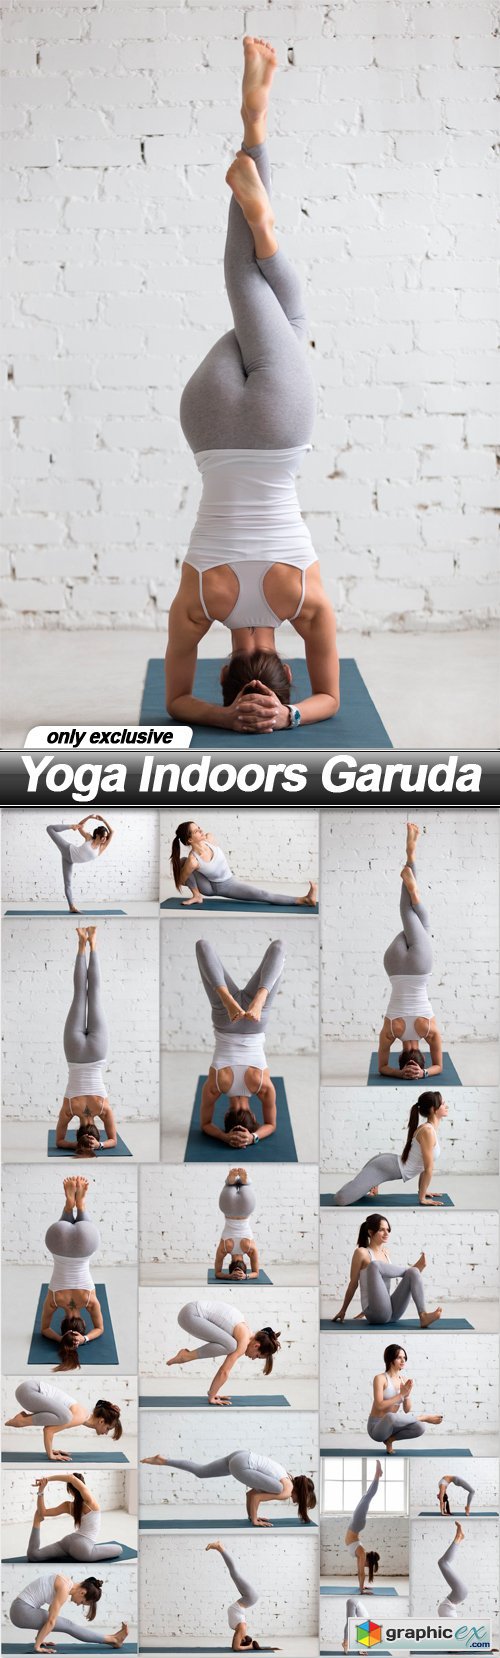 Yoga Indoors Garuda - 20 UHQ JPEG